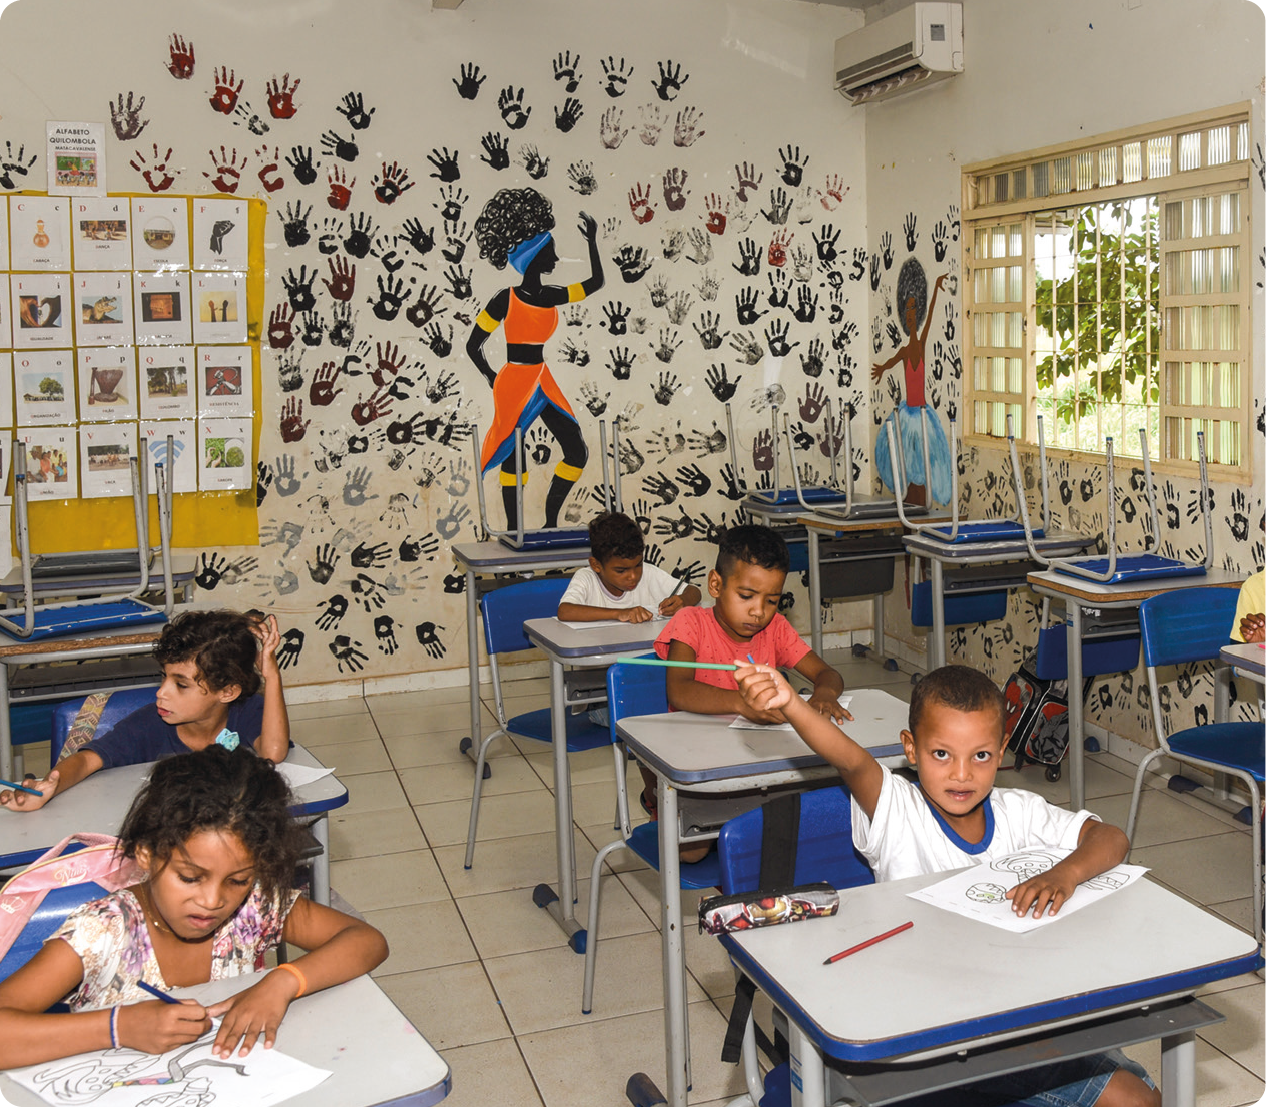 Fotografia. Vista de uma sala de aula. No primeiro plano, algumas crianças sentadas e pintando desenhos. Ao fundo, parede com ilustração de mulheres negras e silhuetas de mãos